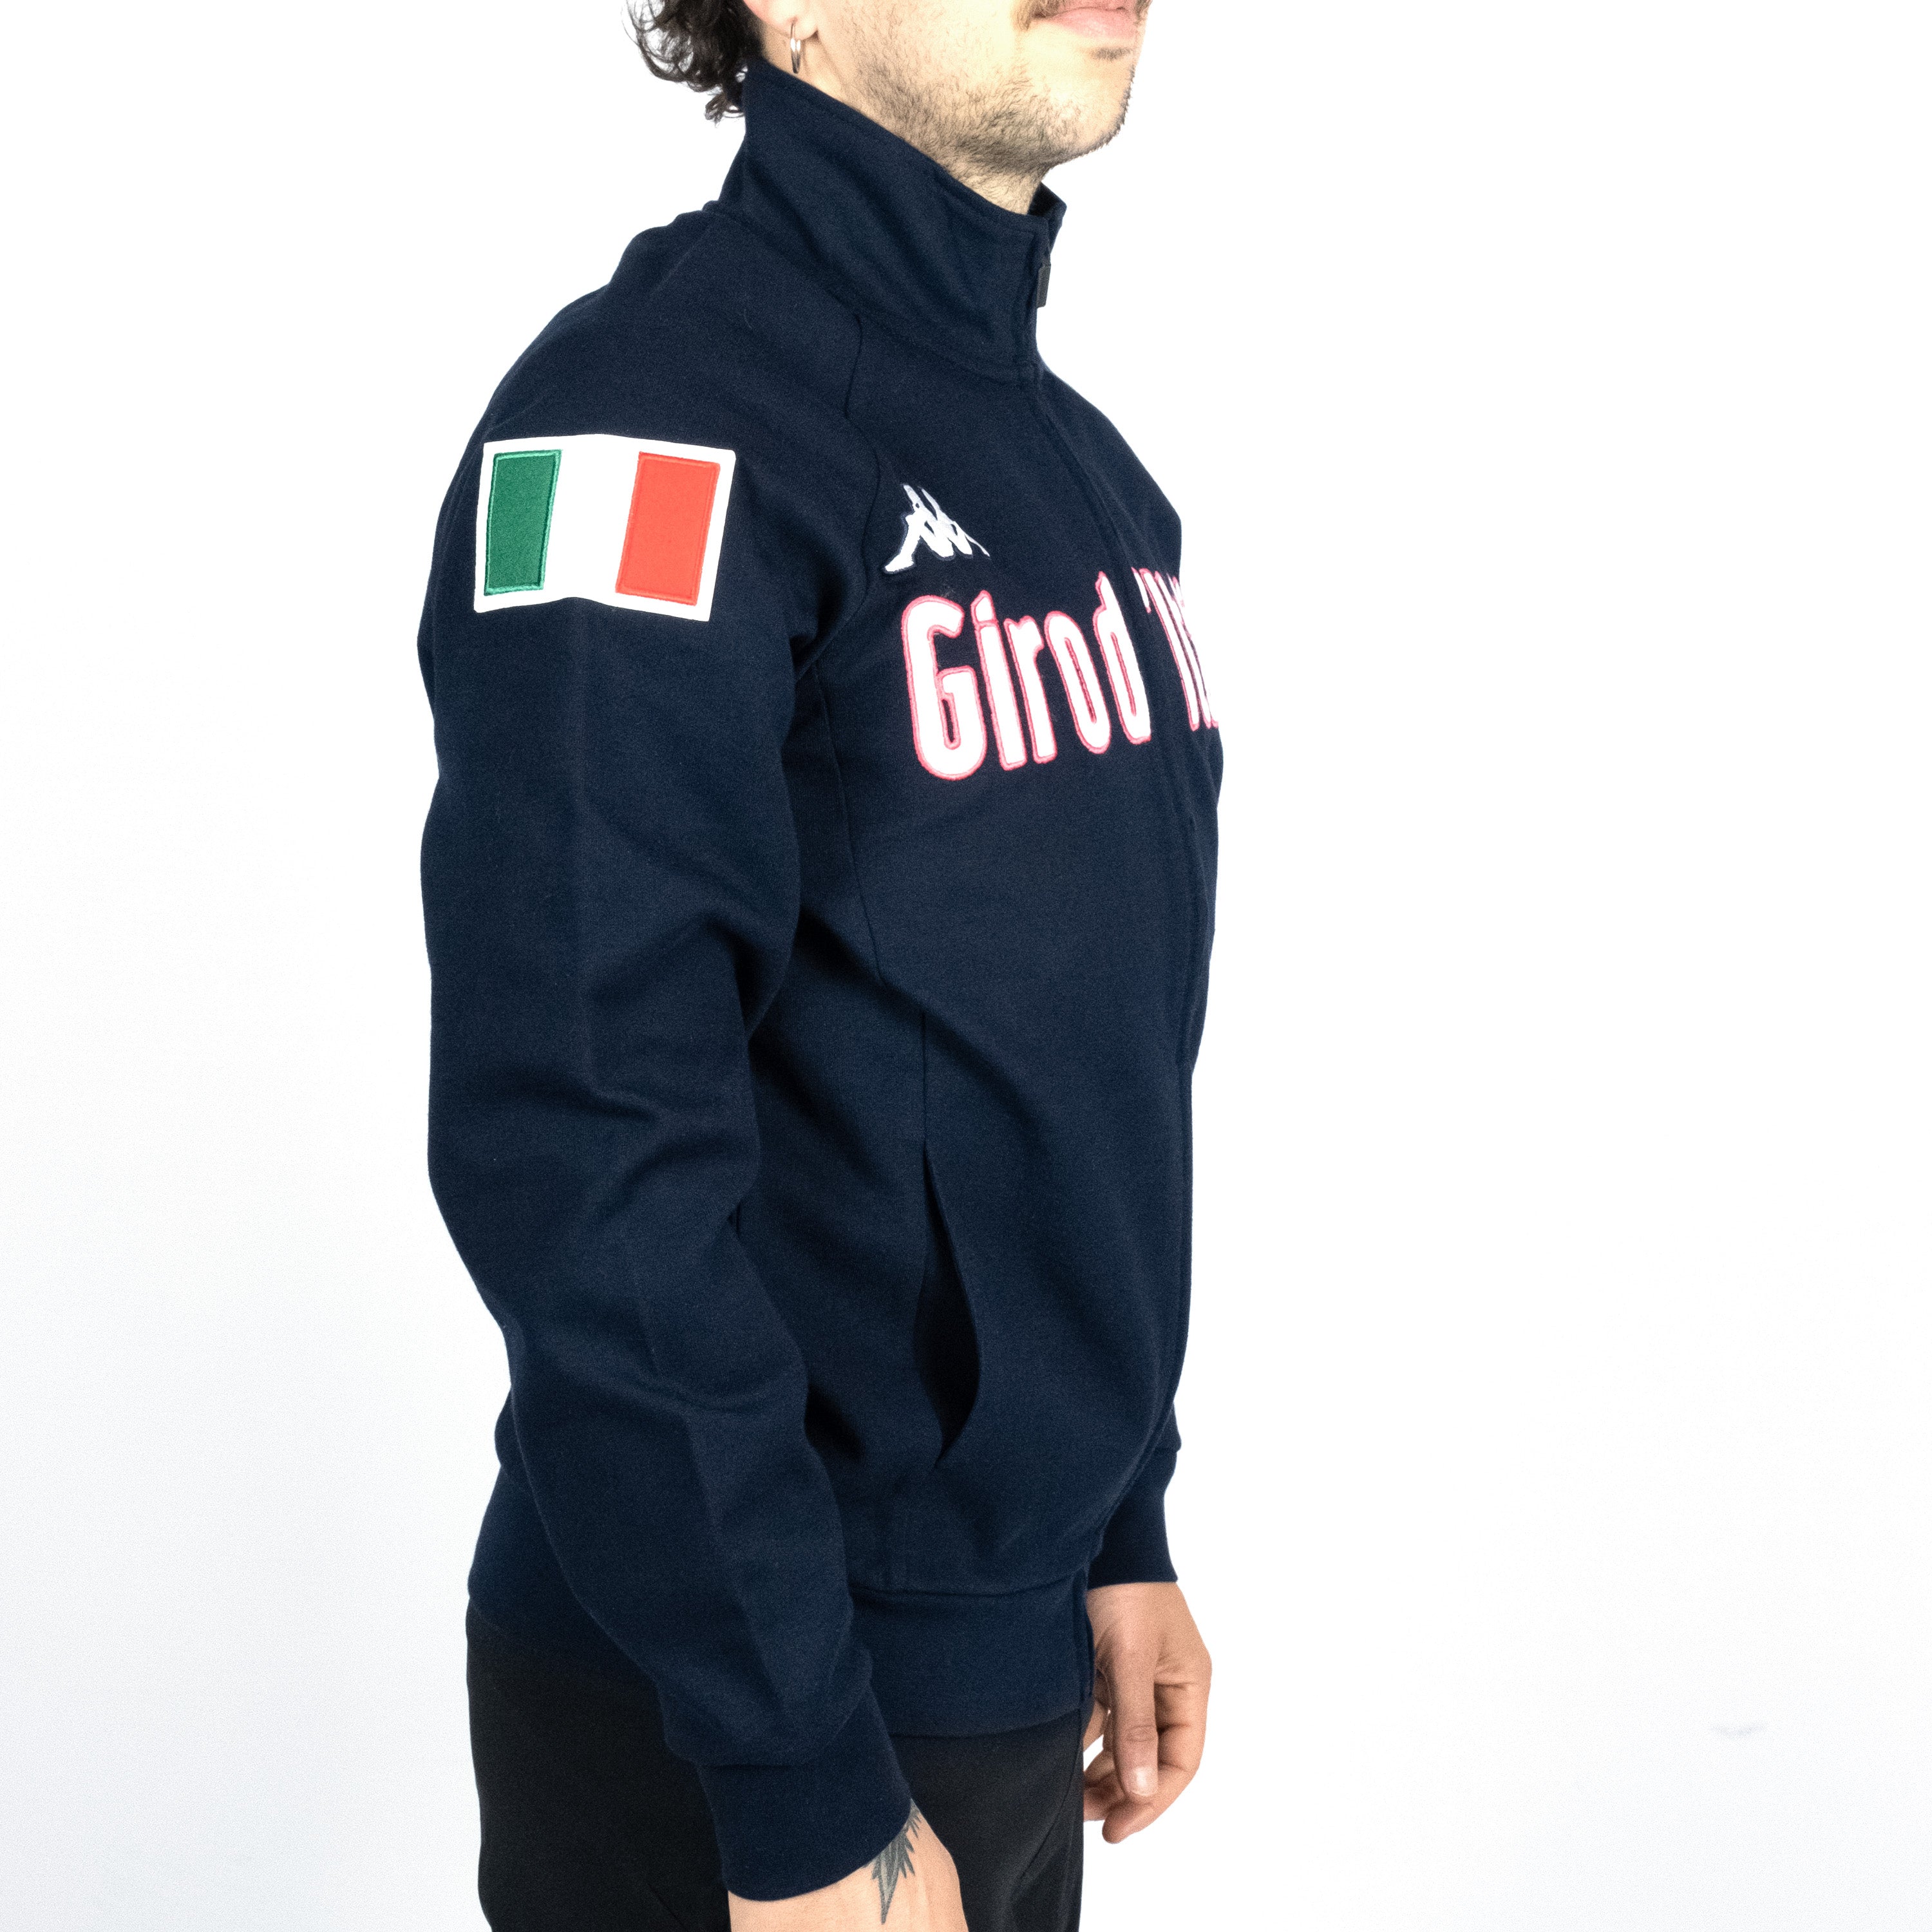 Sweatshirt Giro d'Italia - Blau